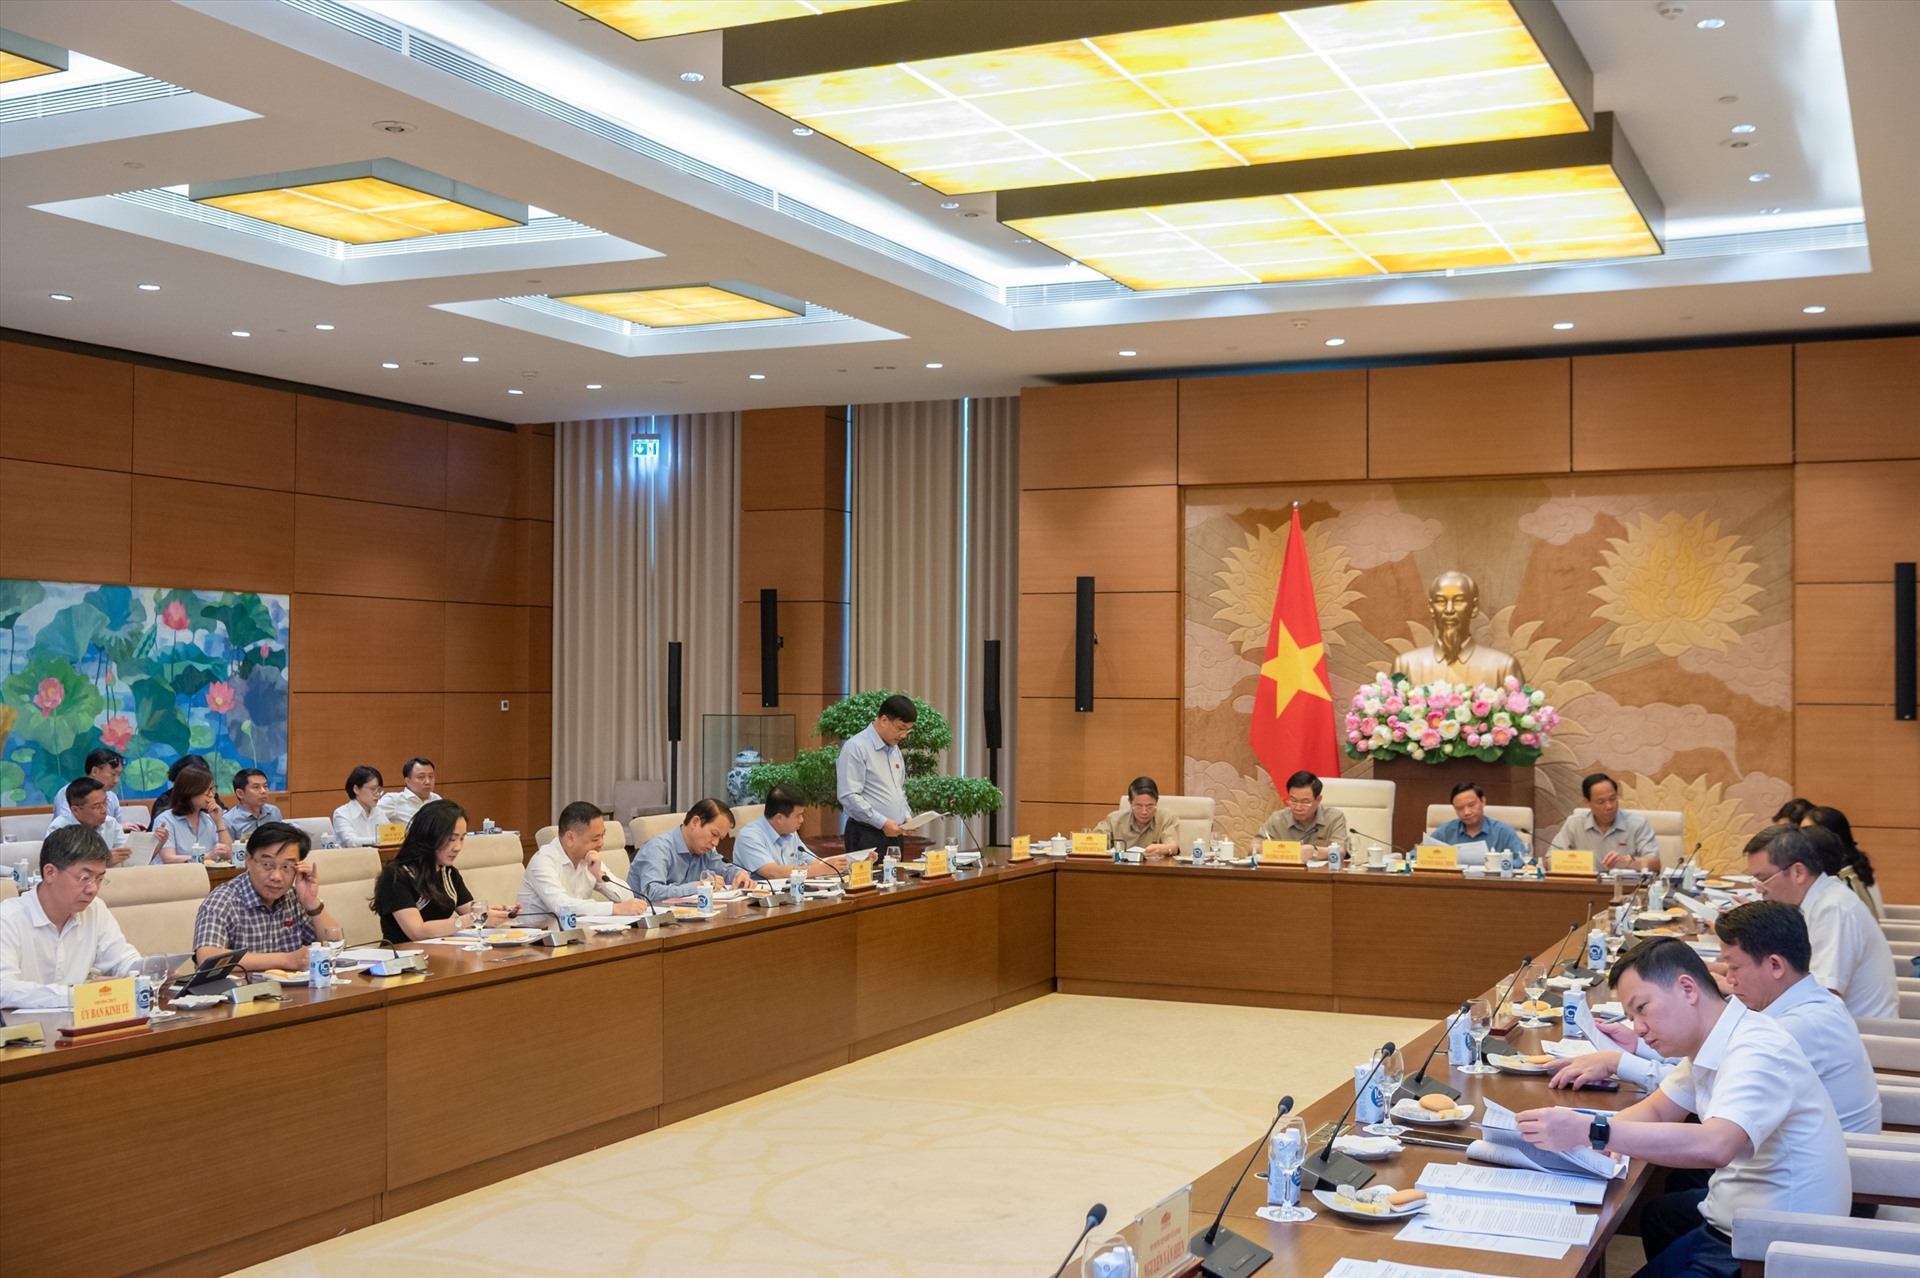 Chủ nhiệm Ủy ban Kinh tế Vũ Hồng Thanh trình bày báo cáo. Ảnh: Phạm Thắng/QH